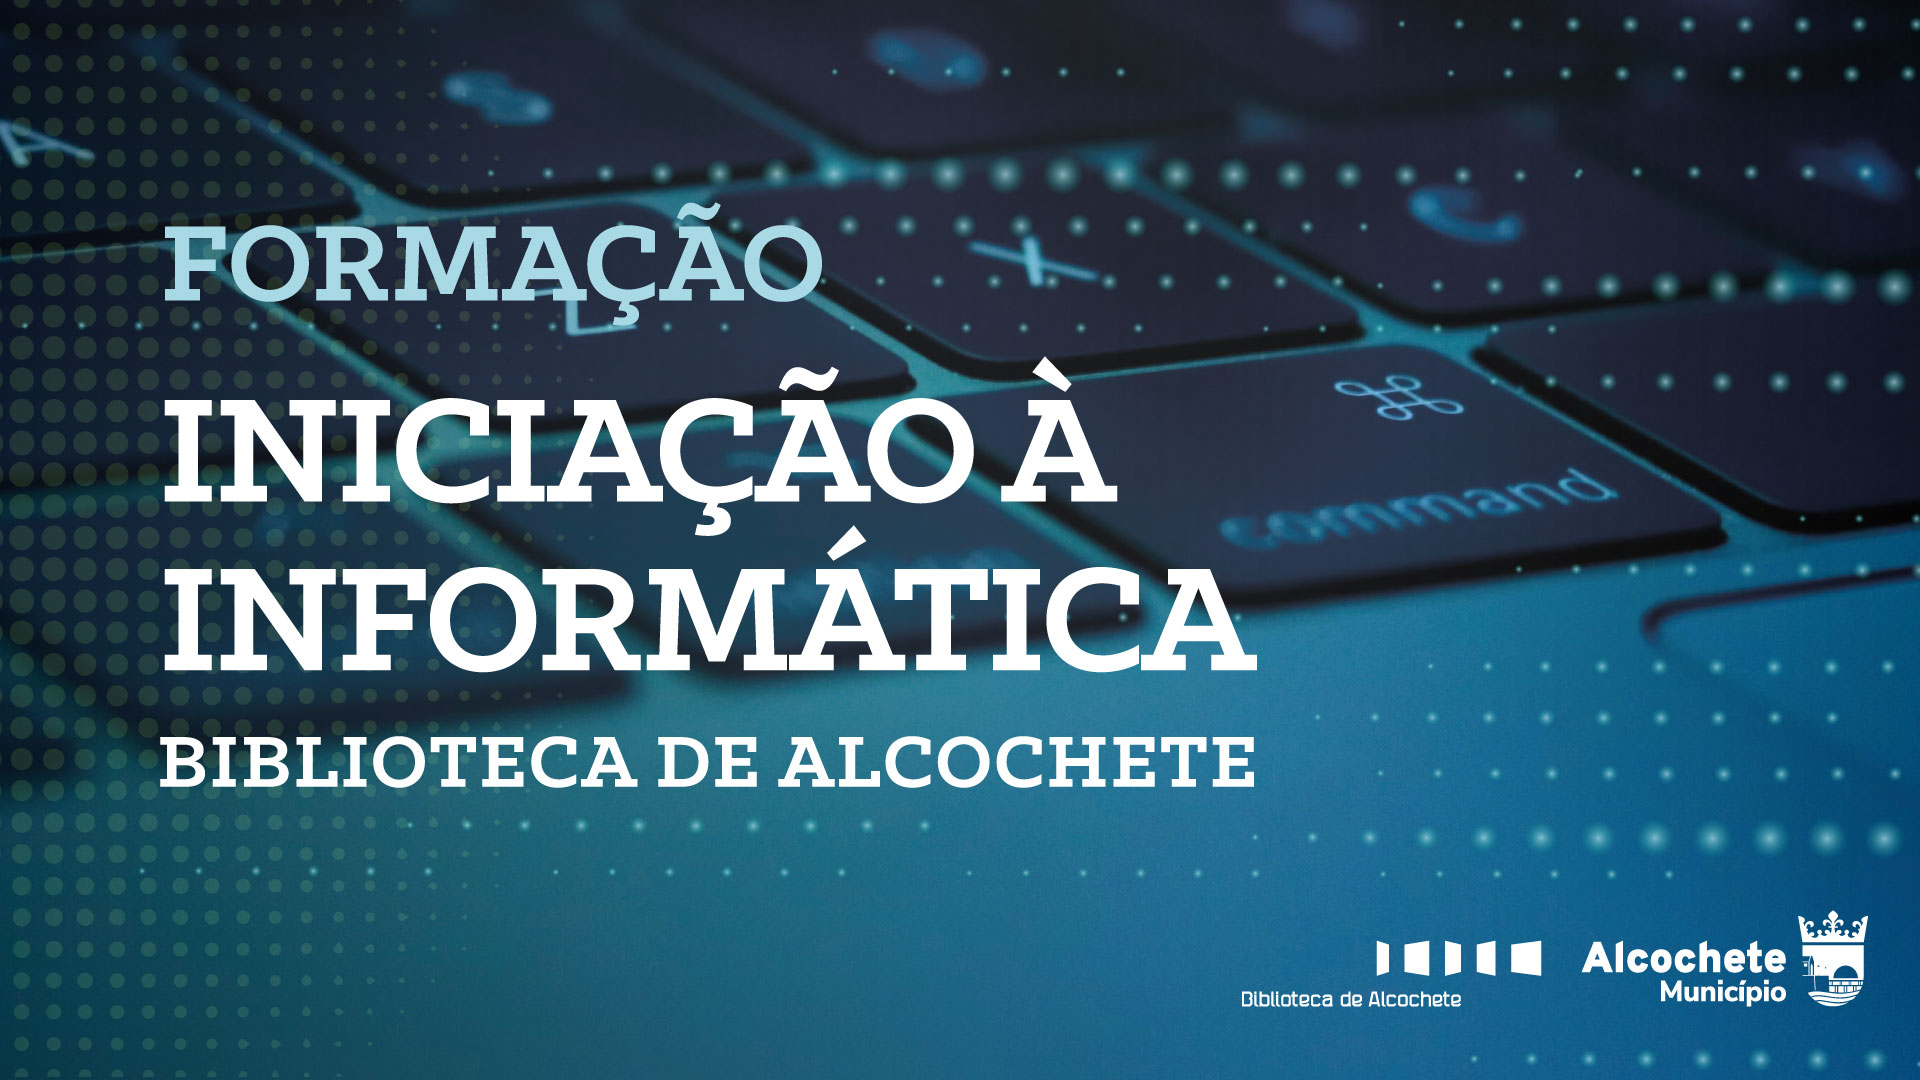 Formação Iniciação à Informática - Alcochete